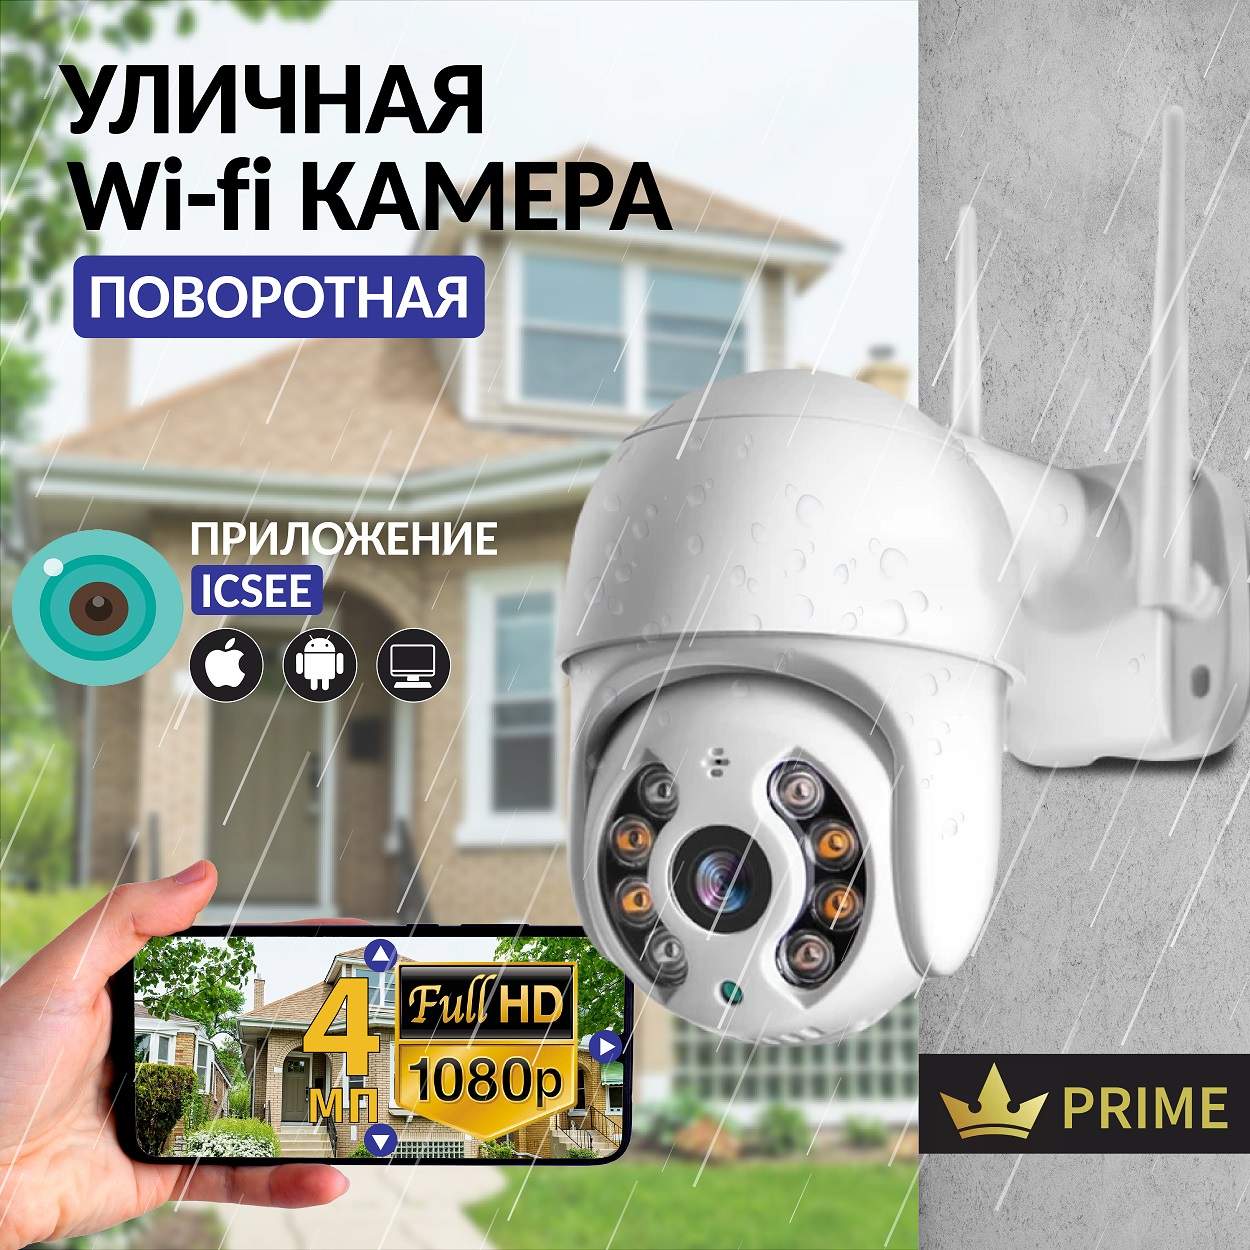 Камера видеонаблюдения IP VG-1360 Wifi уличная поворотная 4 Мп, VVG6986328 сувенирный меч на планшете змеи на уголках эфеса 56 см